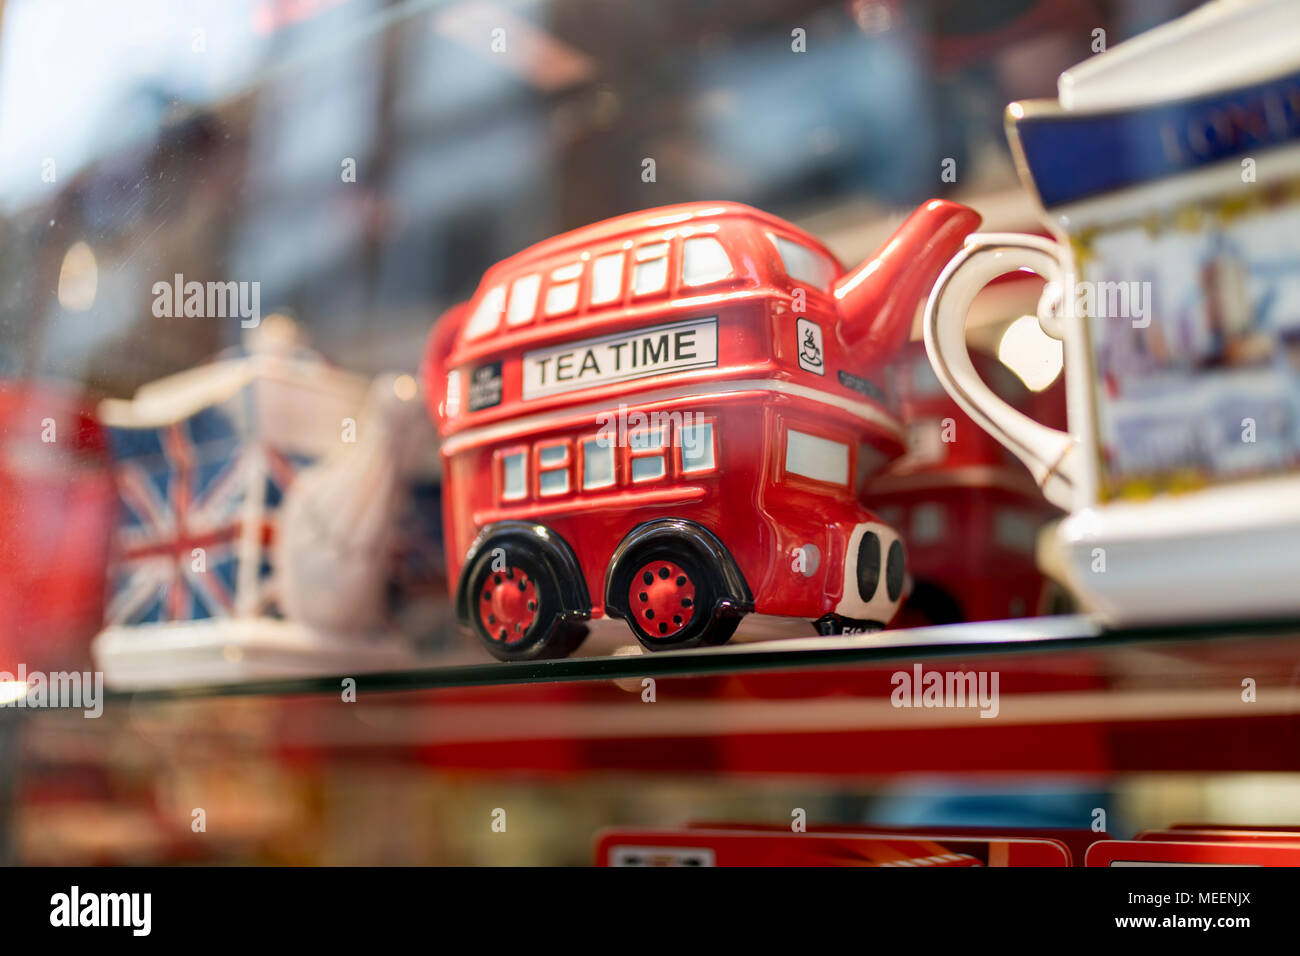 Un magasin de souvenirs de Londres afficher la boutique souvenirs incluant des bus à impériale rouge britannique tea pot célébrant un mariage royal au Royaume-Uni Banque D'Images